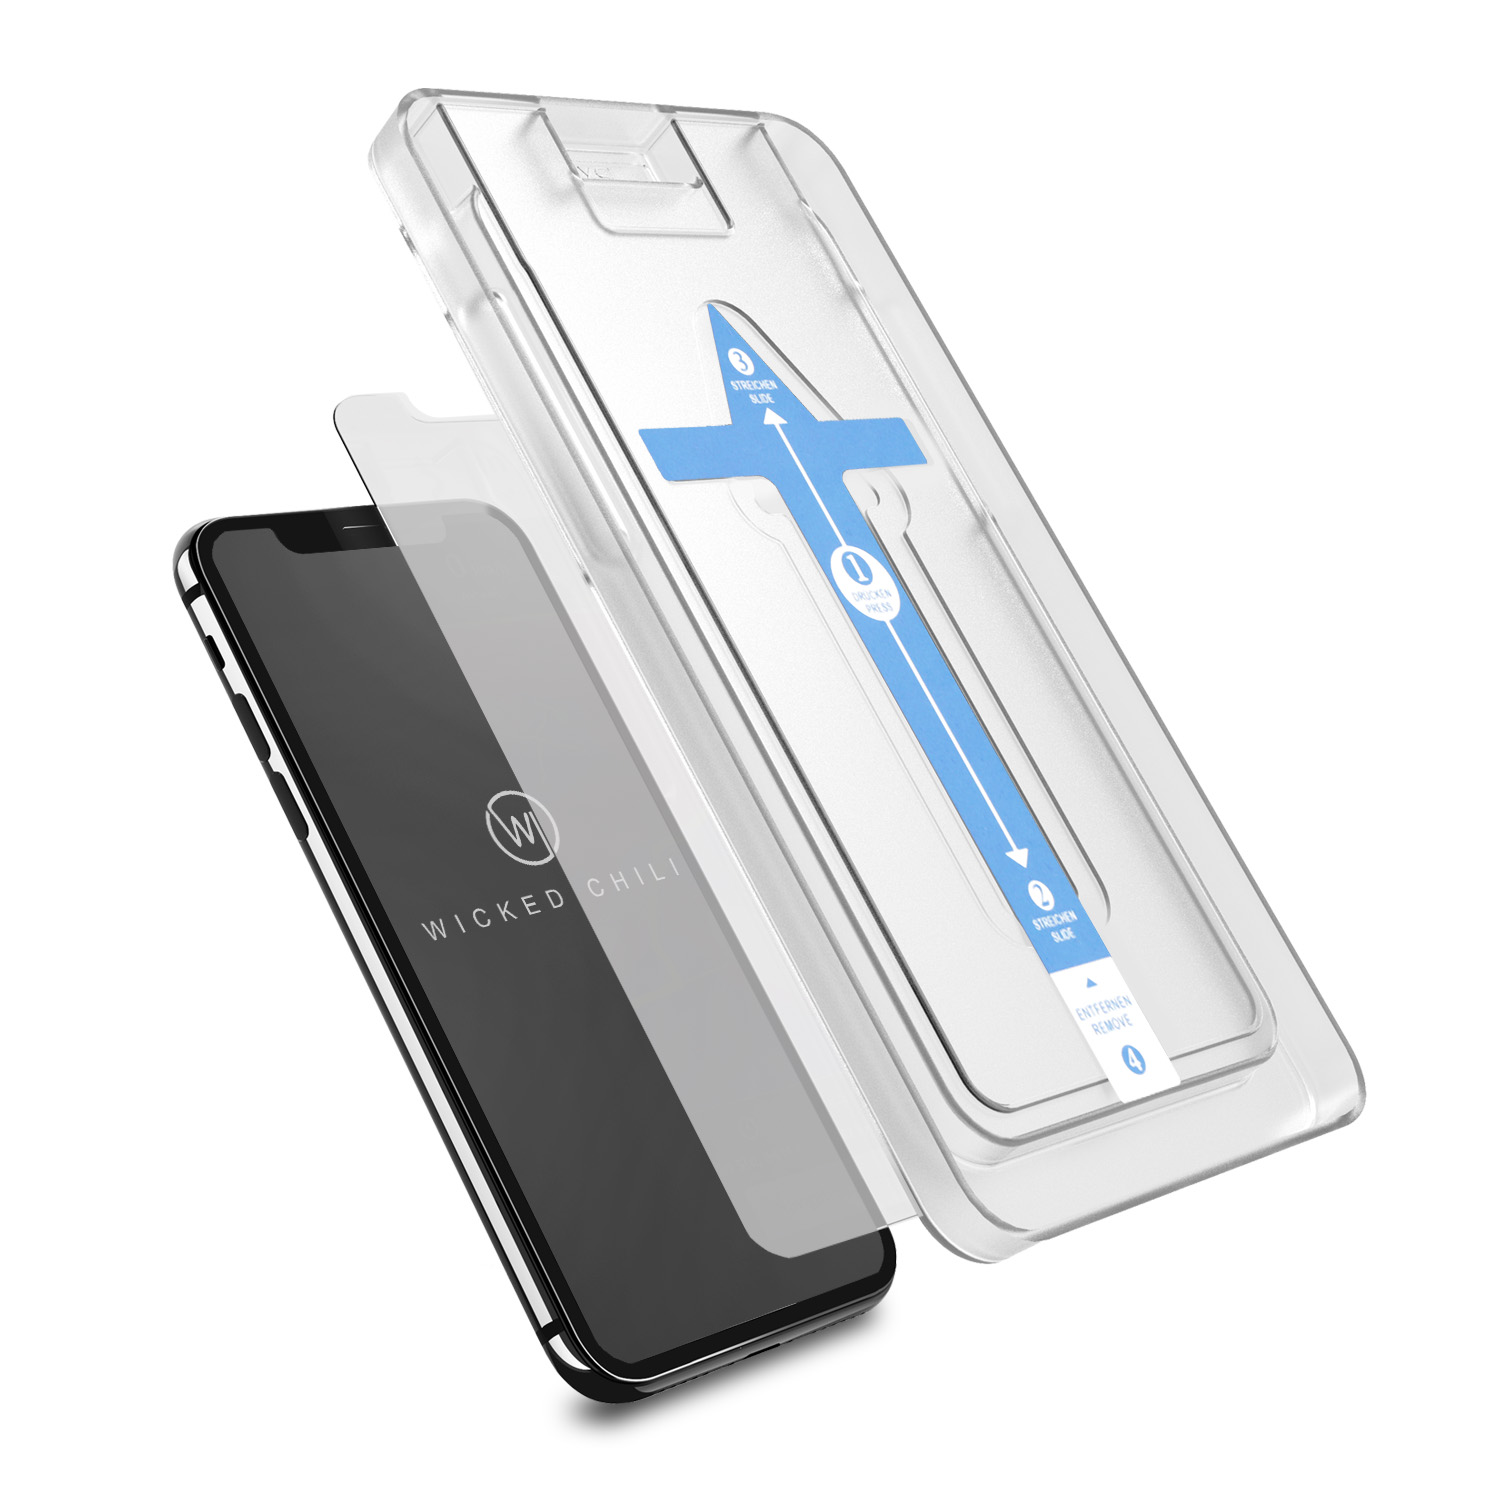 WICKED CHILI 2X Easy-In Apple Schutzglas(für 11 / XR) iPhone